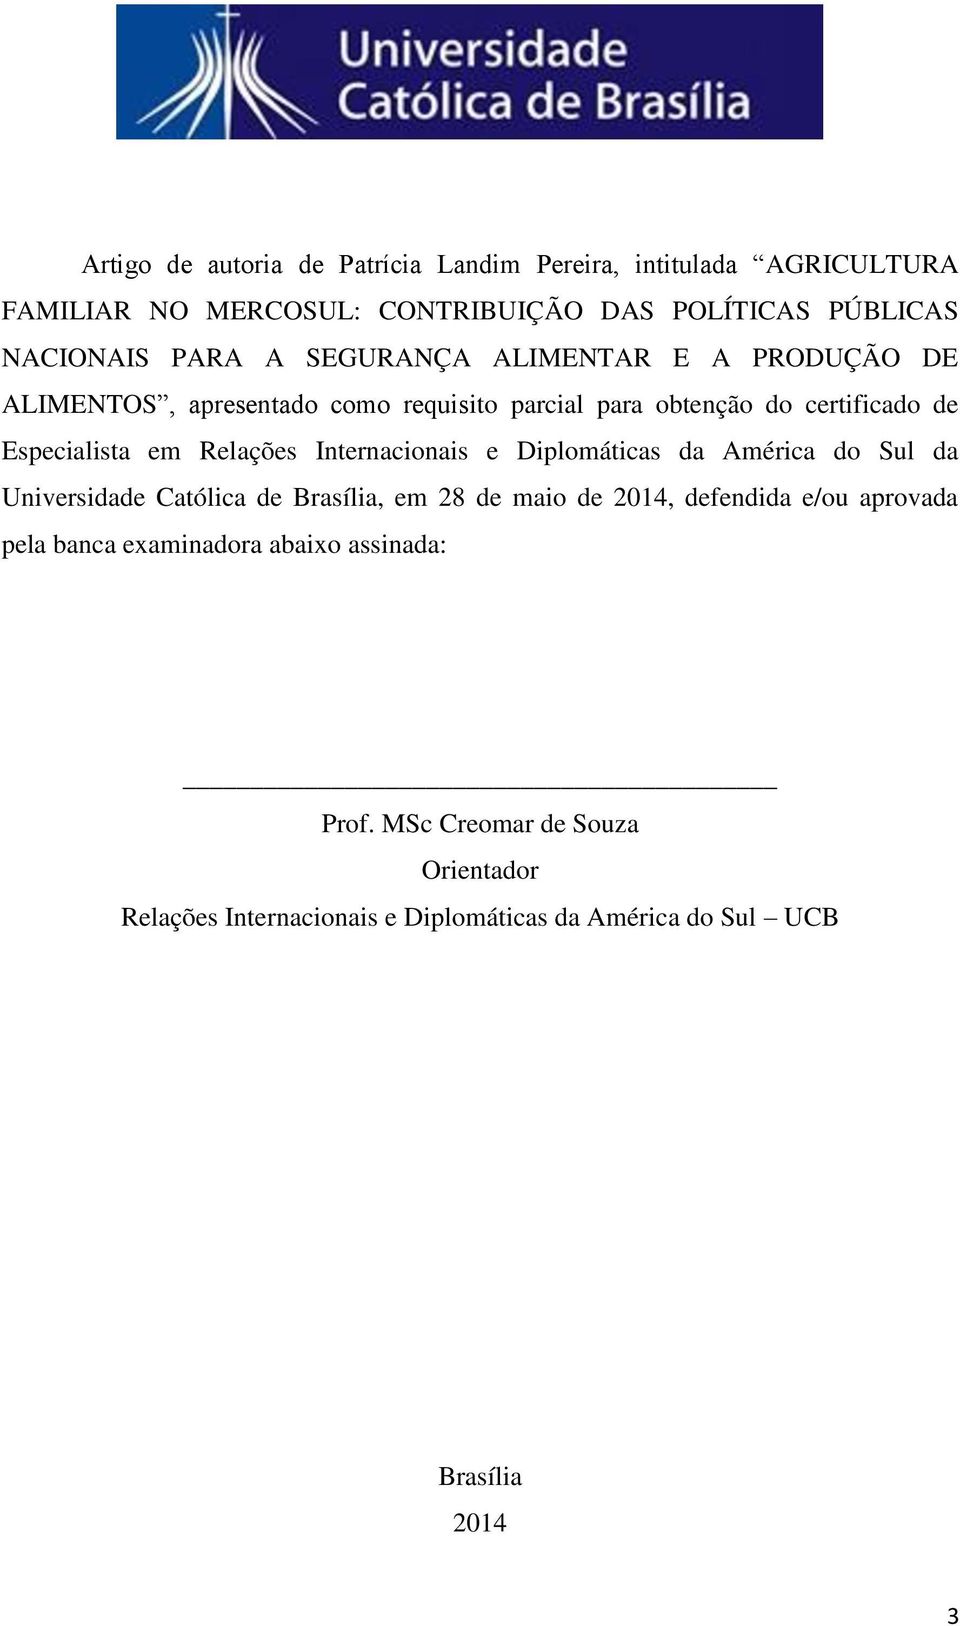 Internacionais e Diplomáticas da América do Sul da Universidade Católica de Brasília, em 28 de maio de 2014, defendida e/ou aprovada pela